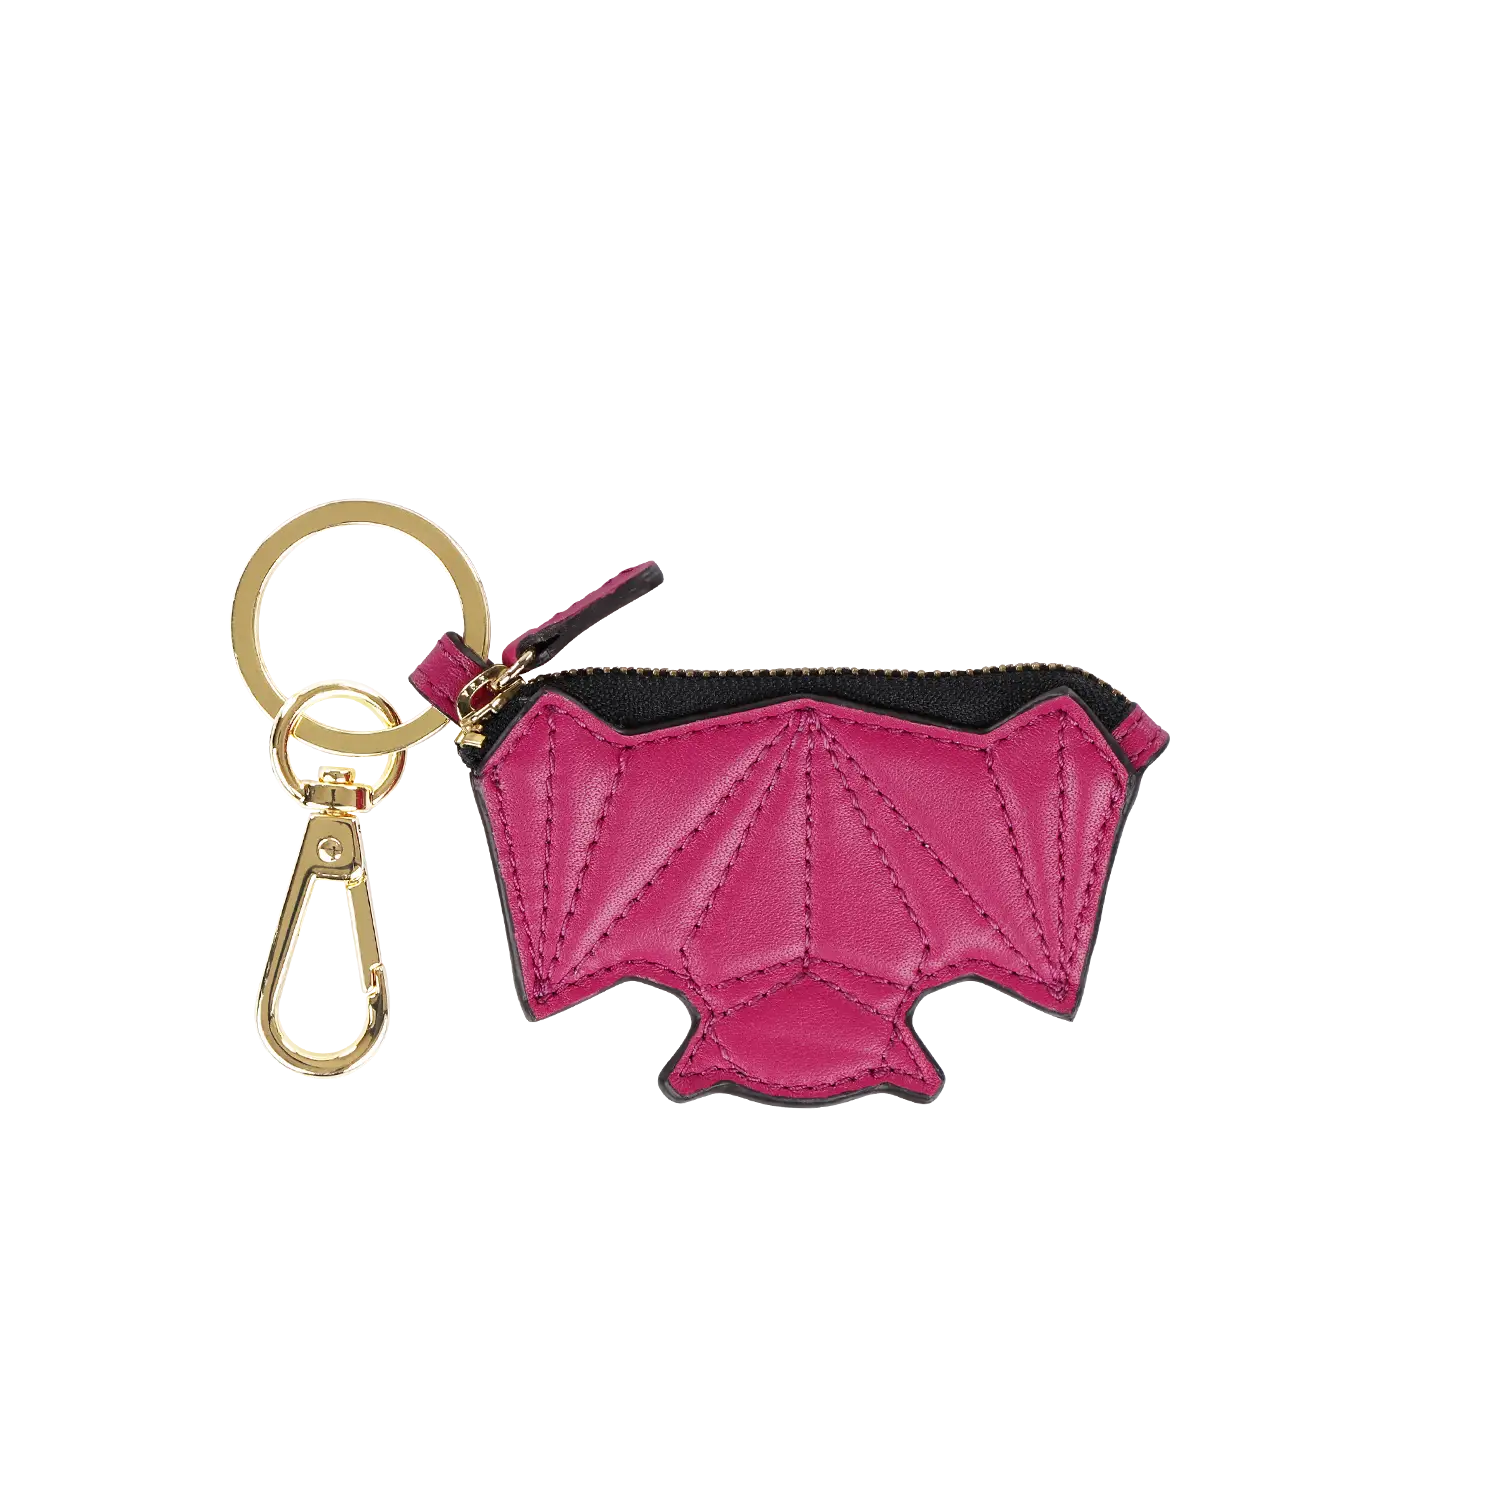 Schluesselanhaenger - Zip it Bat - pink